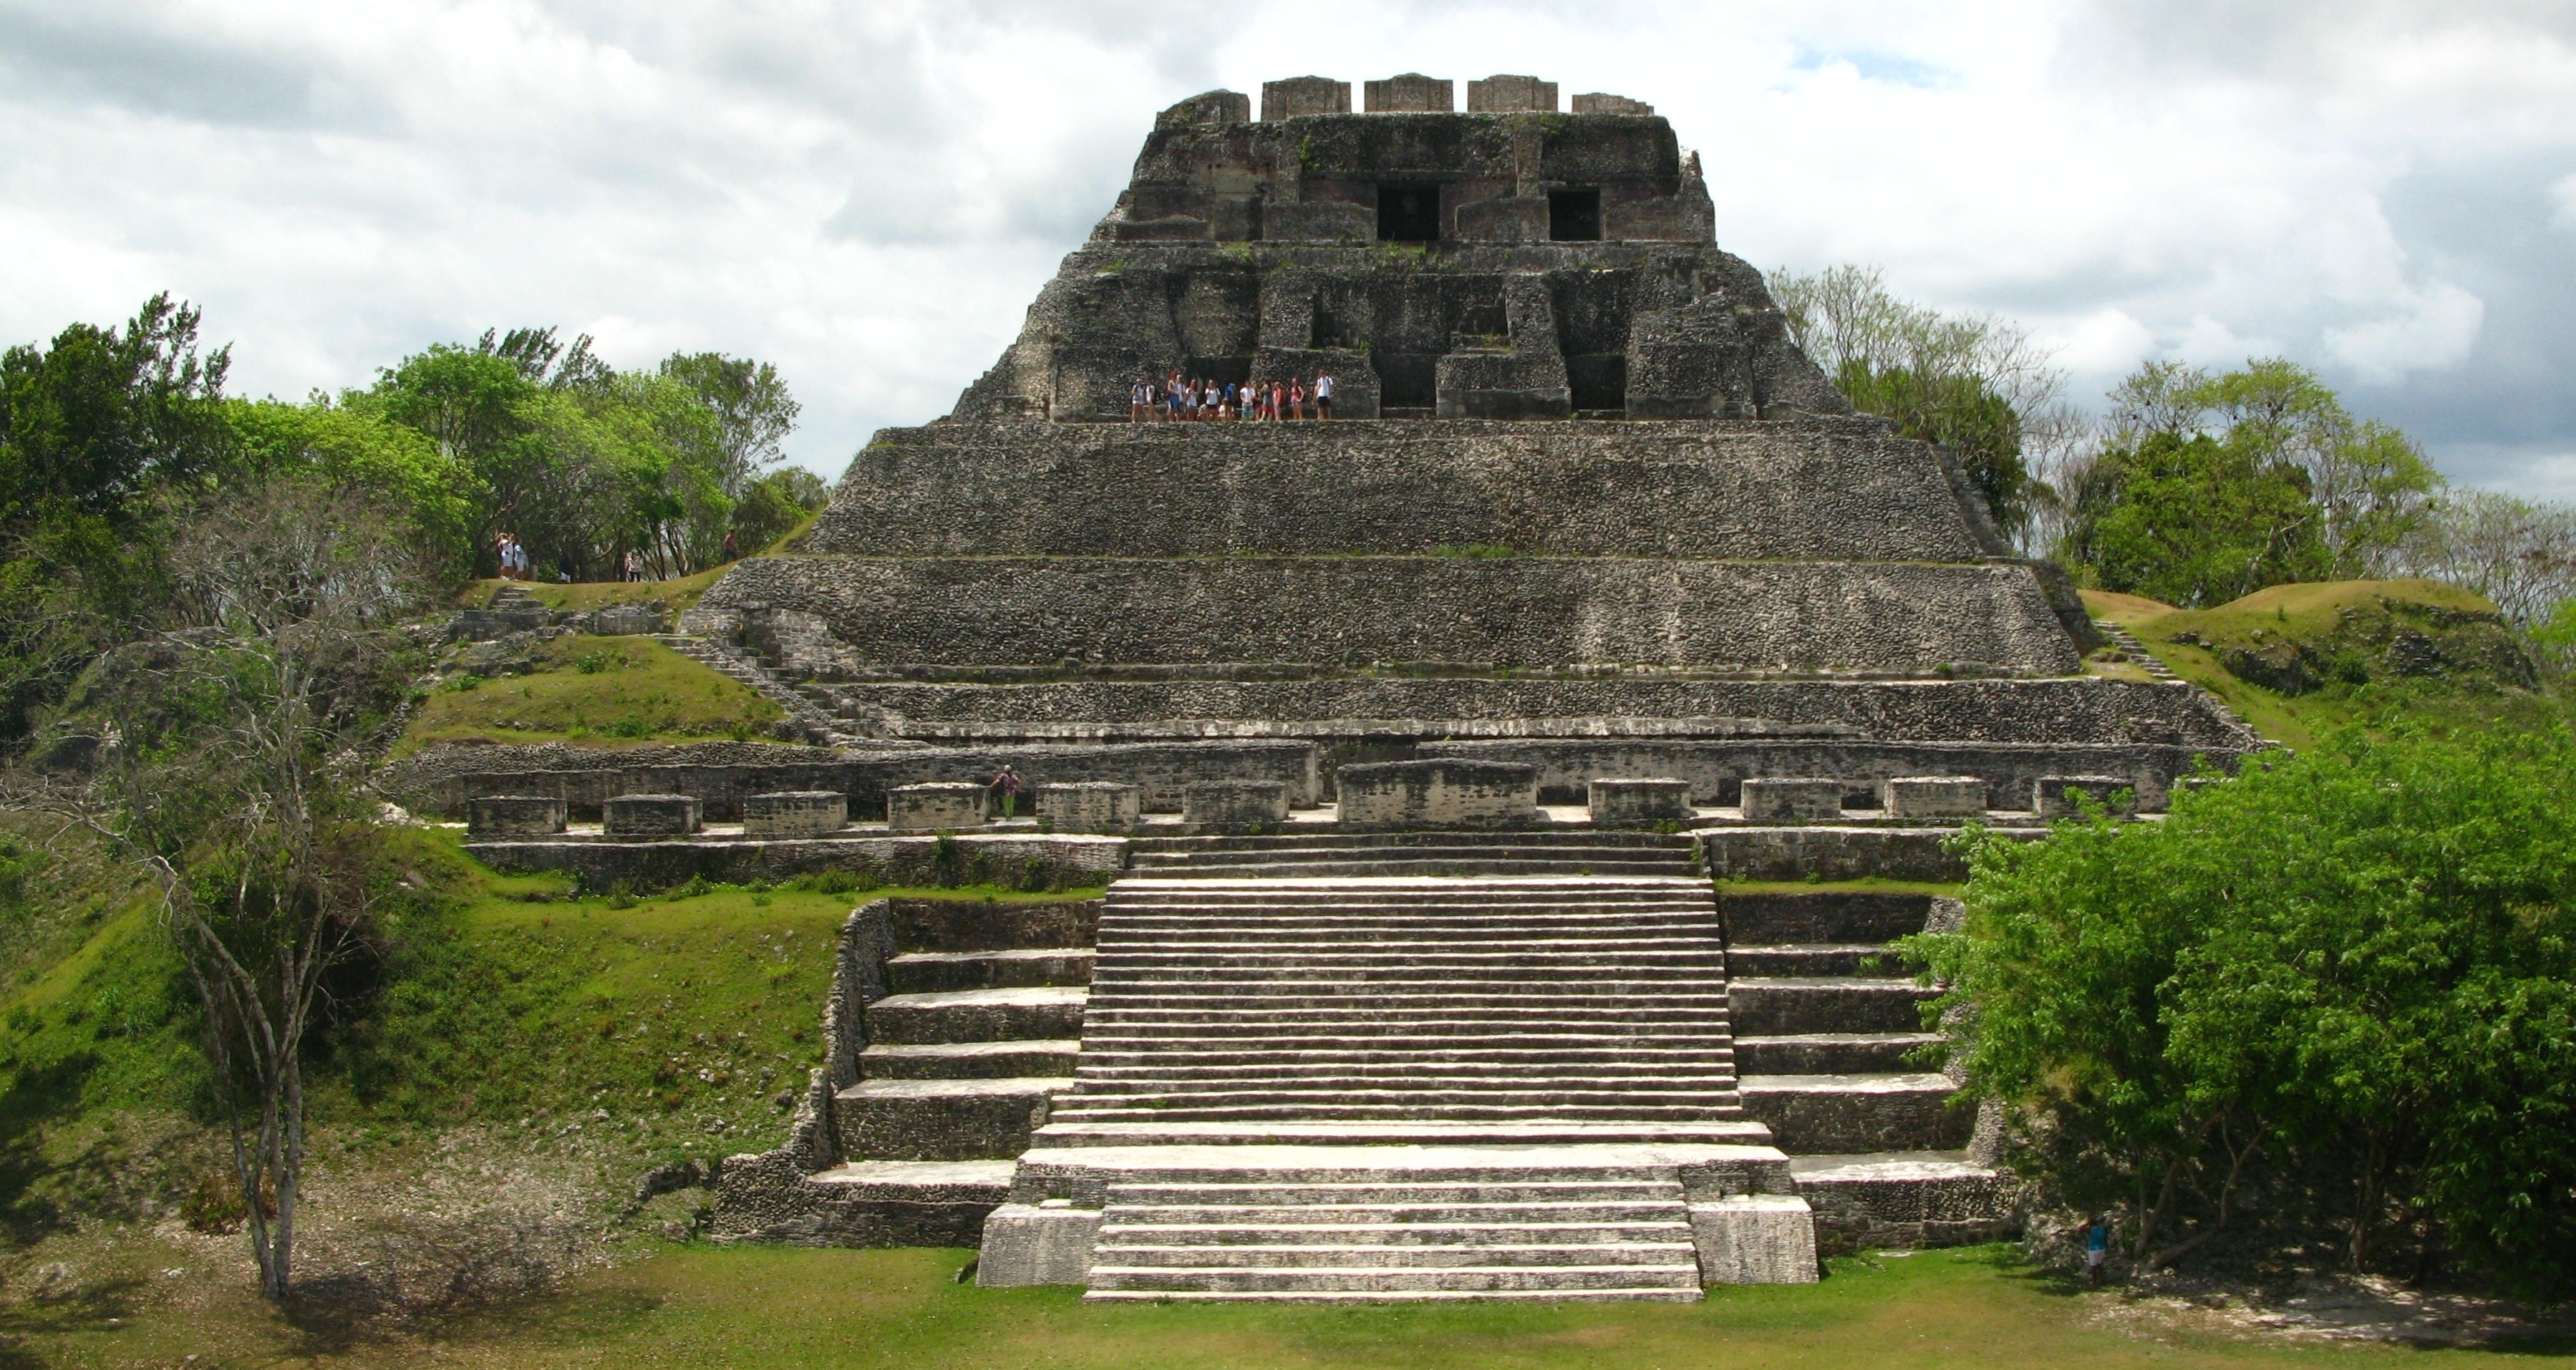 El Castillo, in the Maya city of Xunantunich, Belize